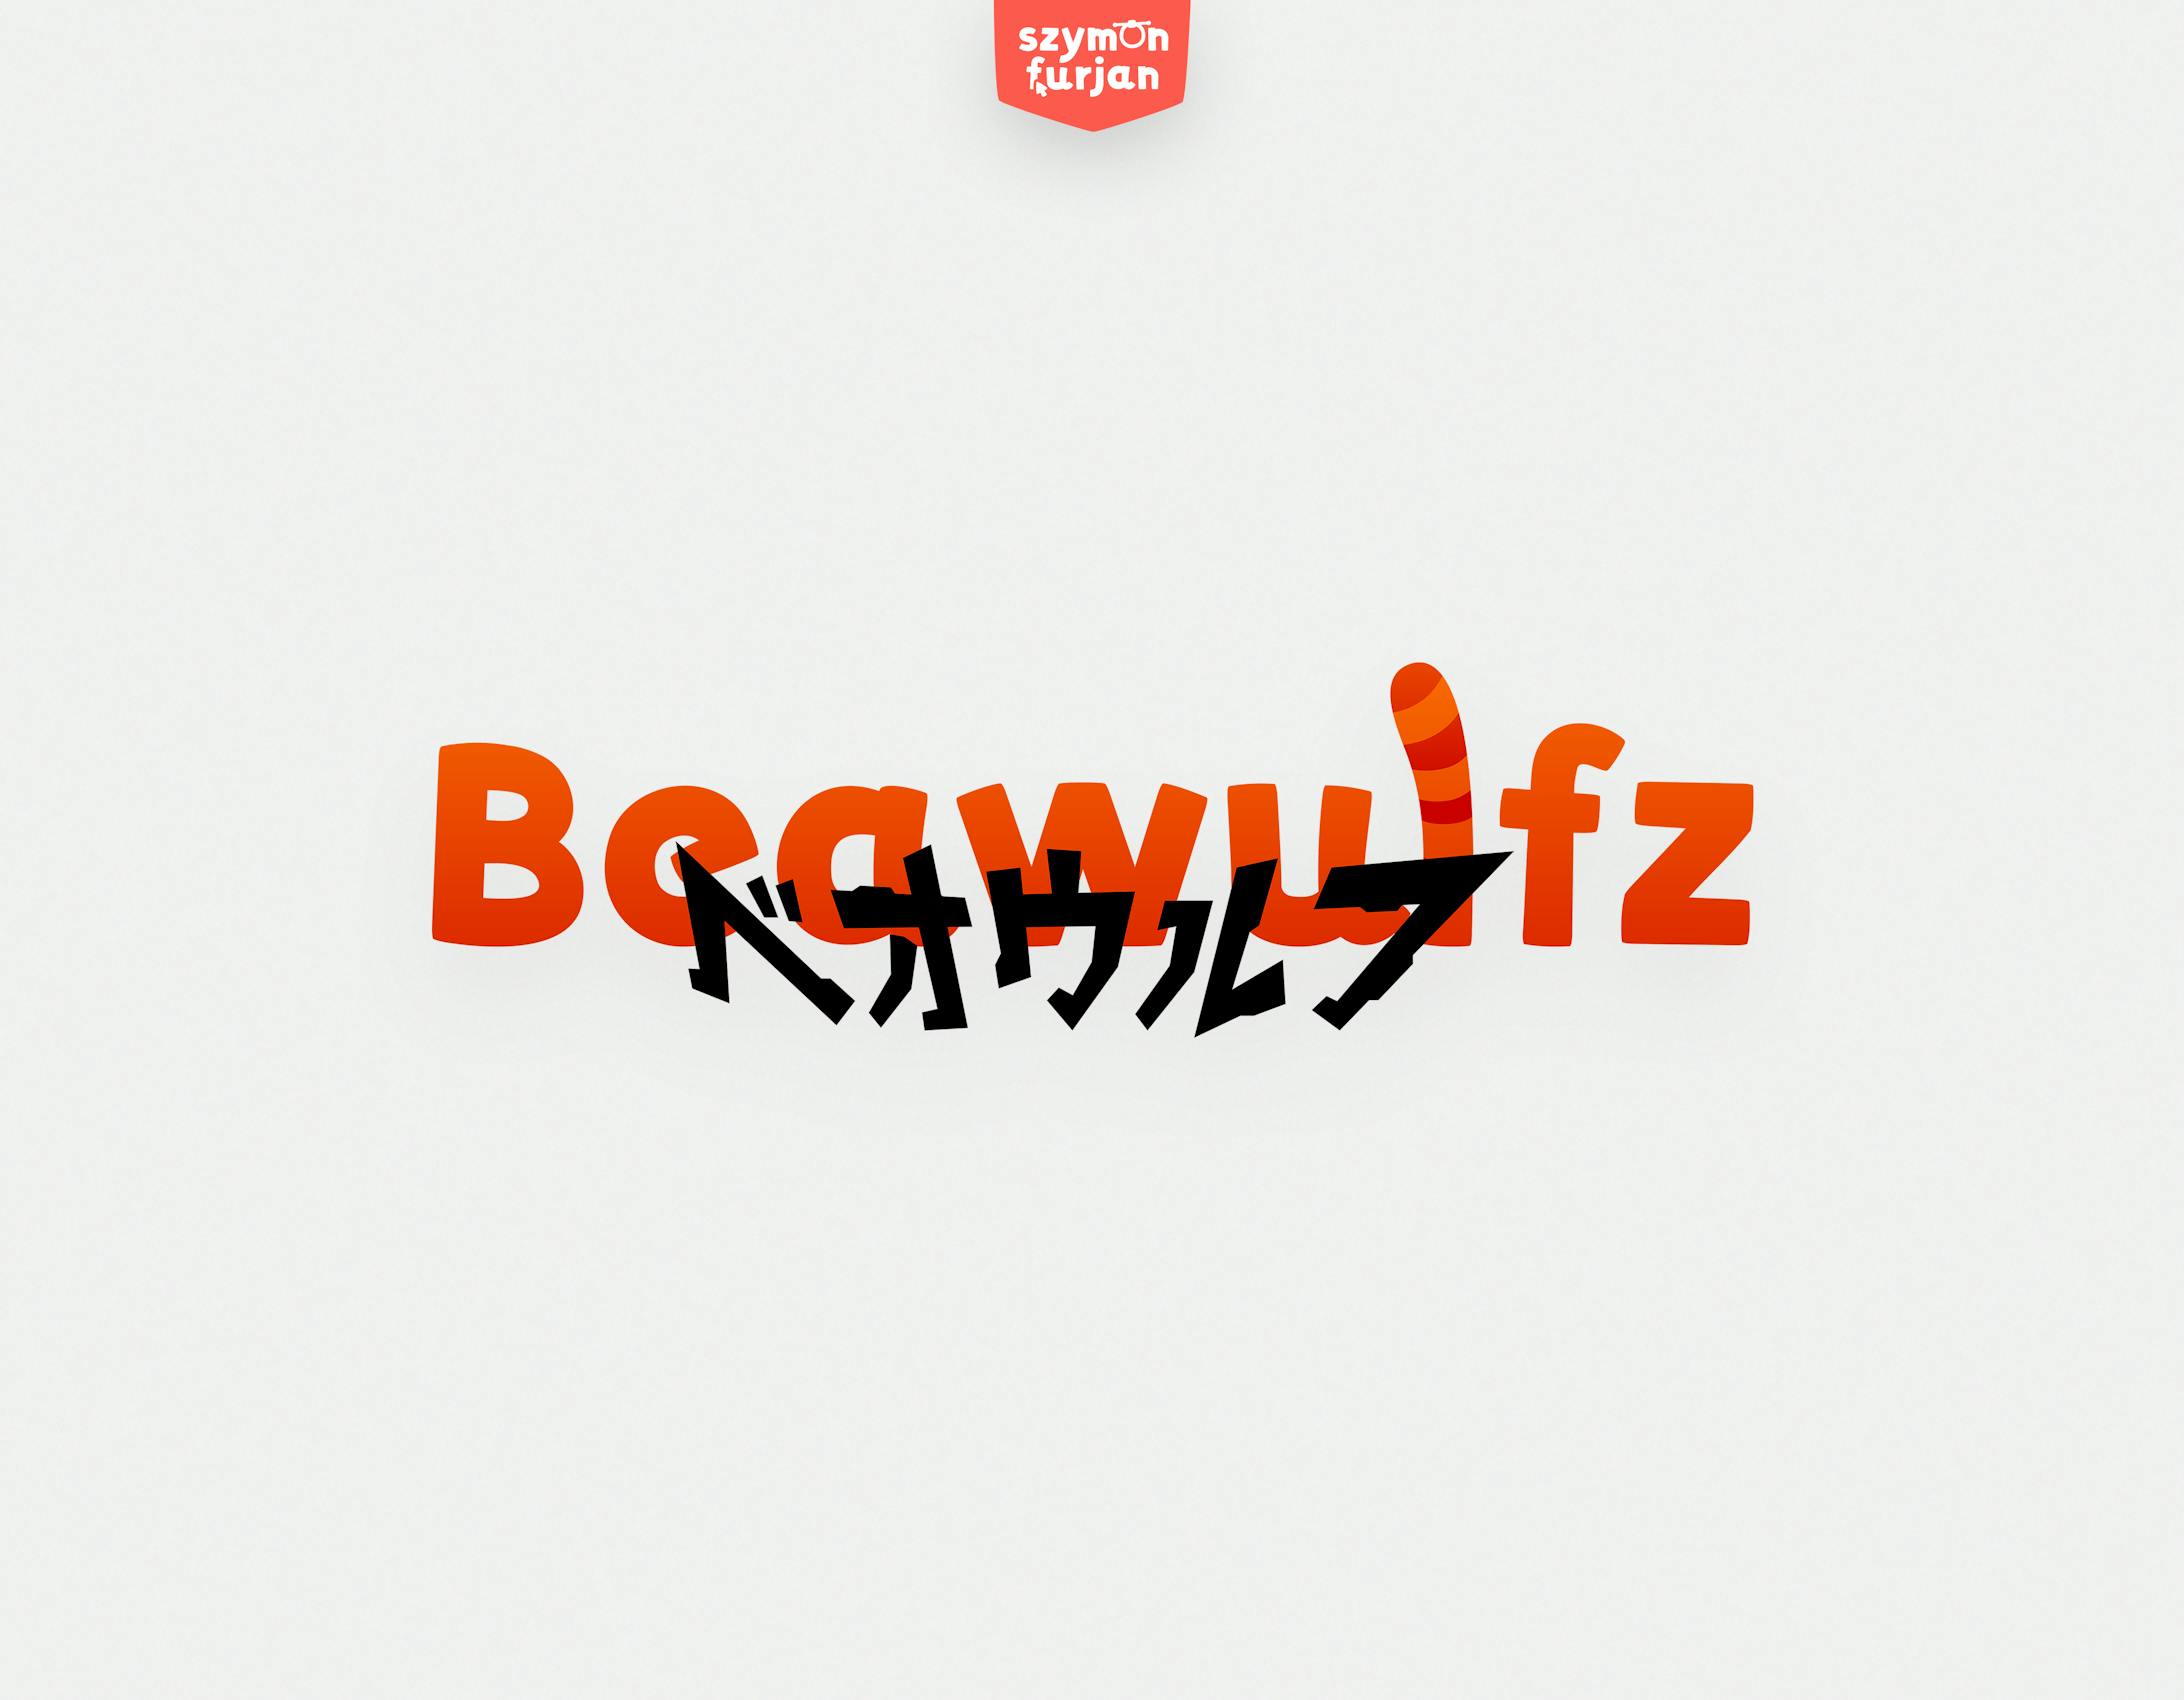 Beawulfz-1